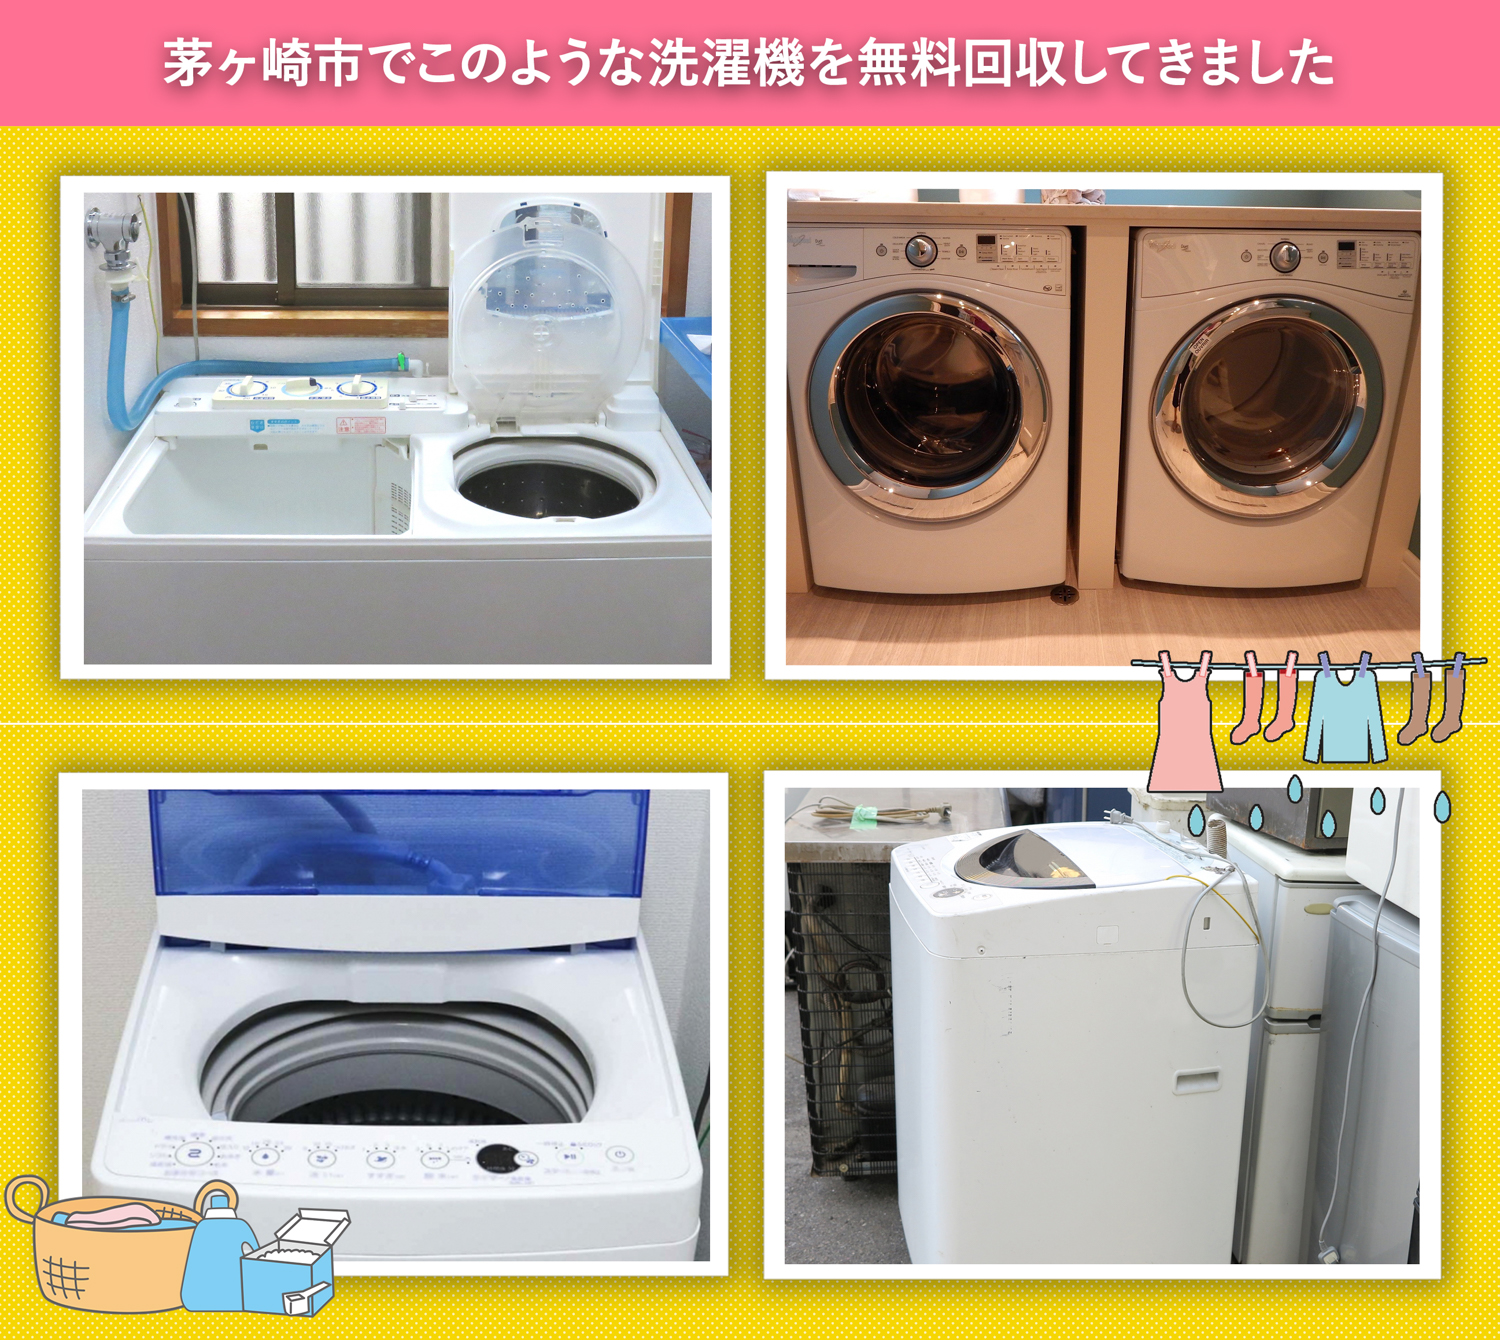 茅ヶ崎市でこのような洗濯機を無料回収してきました。